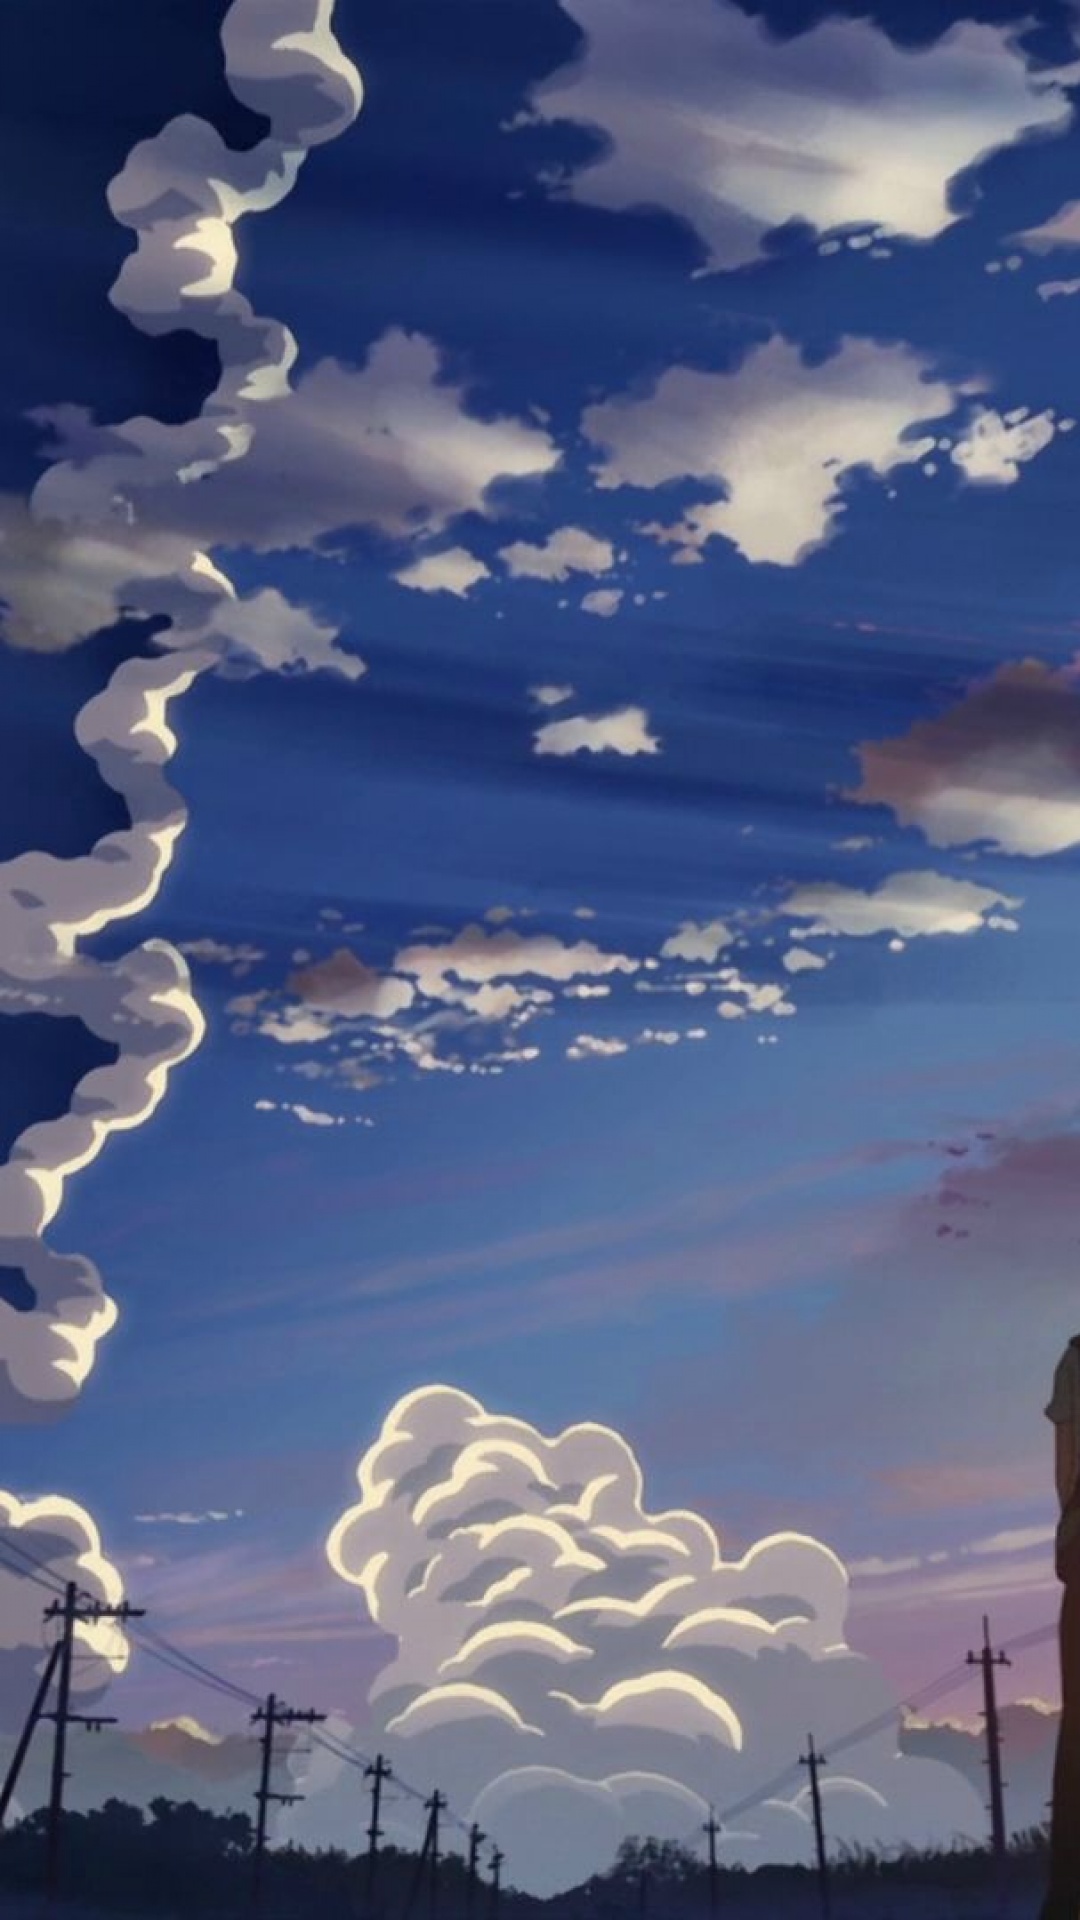 Ghim của Mak_lem trên Anime | Hình ảnh, Ảnh ấn tượng, Hoạt hình | Anime  cover photo, Cool anime pictures, Anime artwork wallpaper